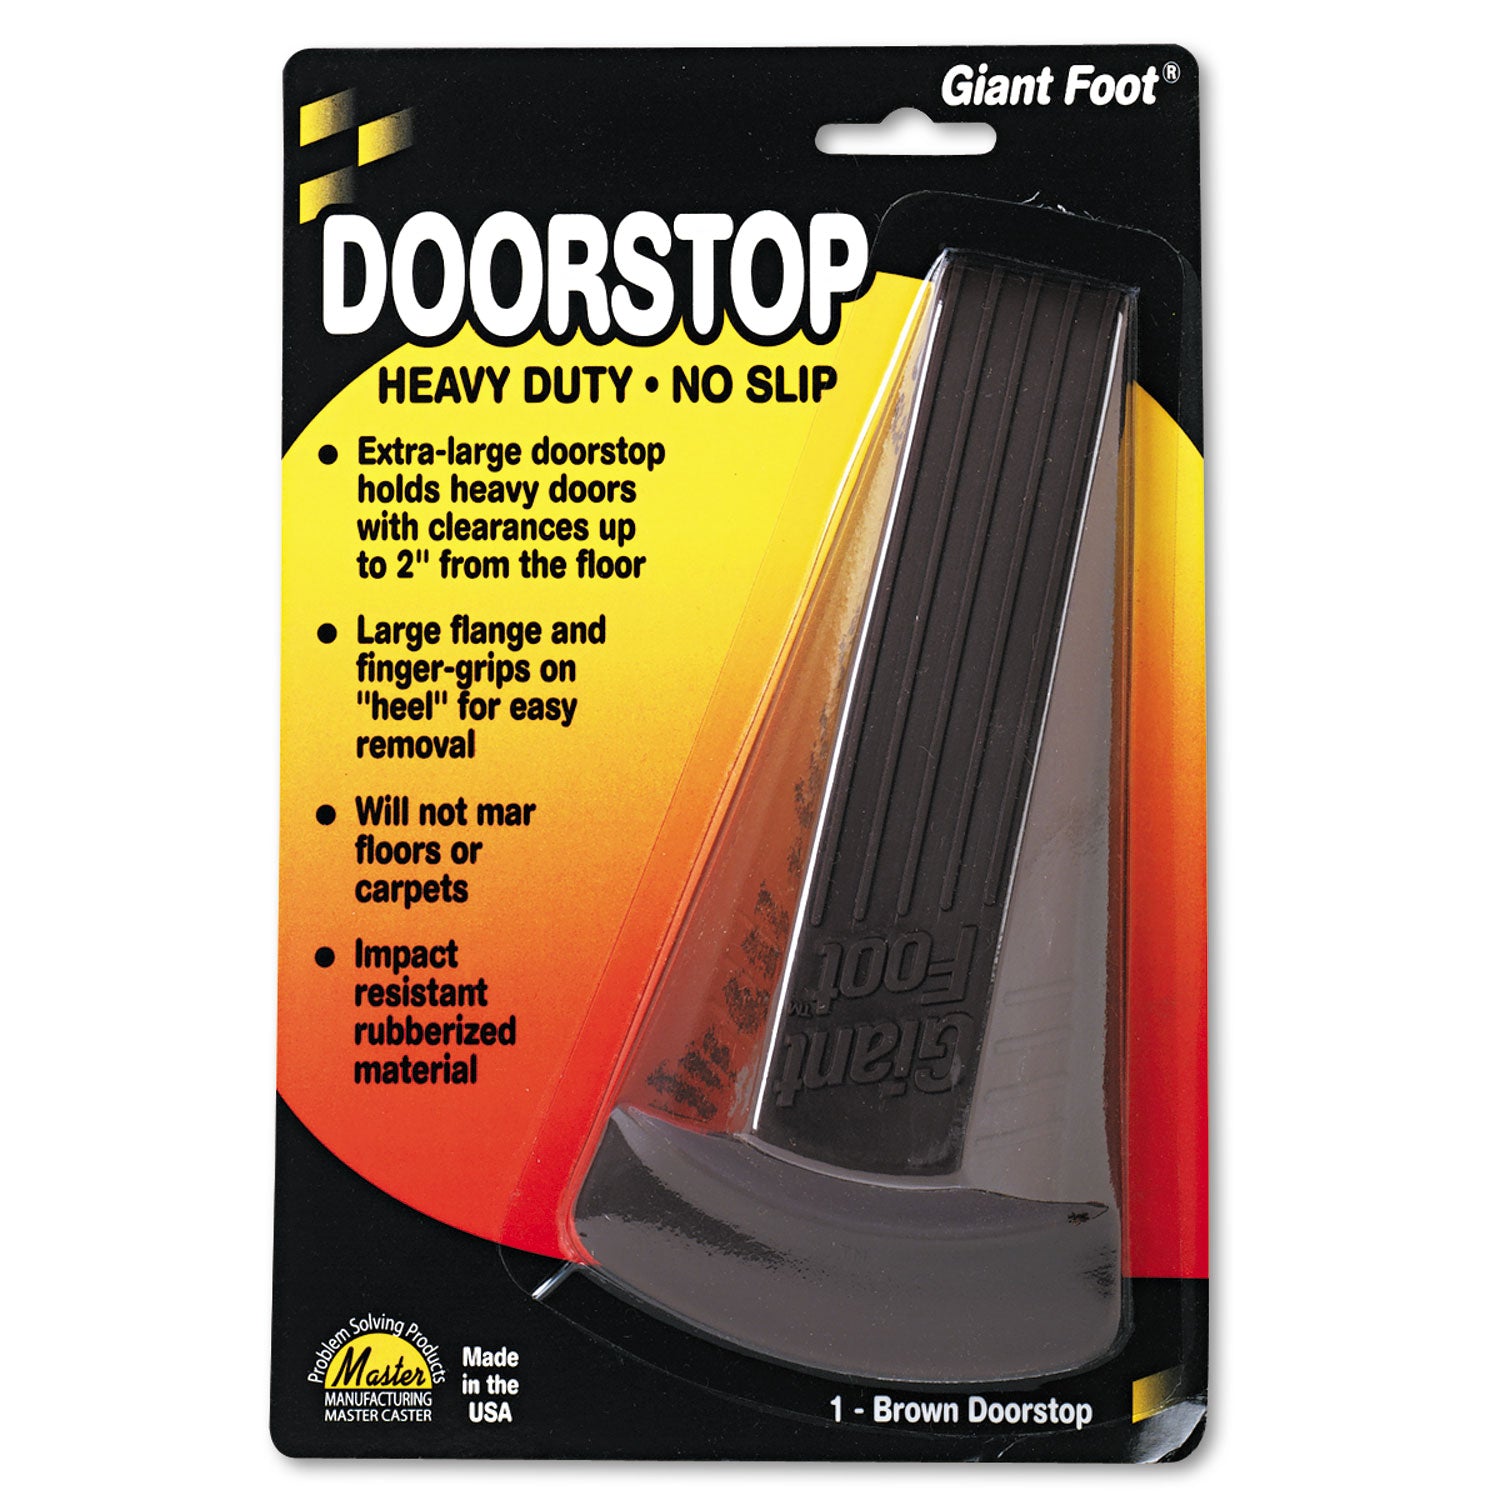 Giant Foot Doorstop, No-Slip Rubber Wedge, 3.5w x 6.75d x 2h, Brown - 